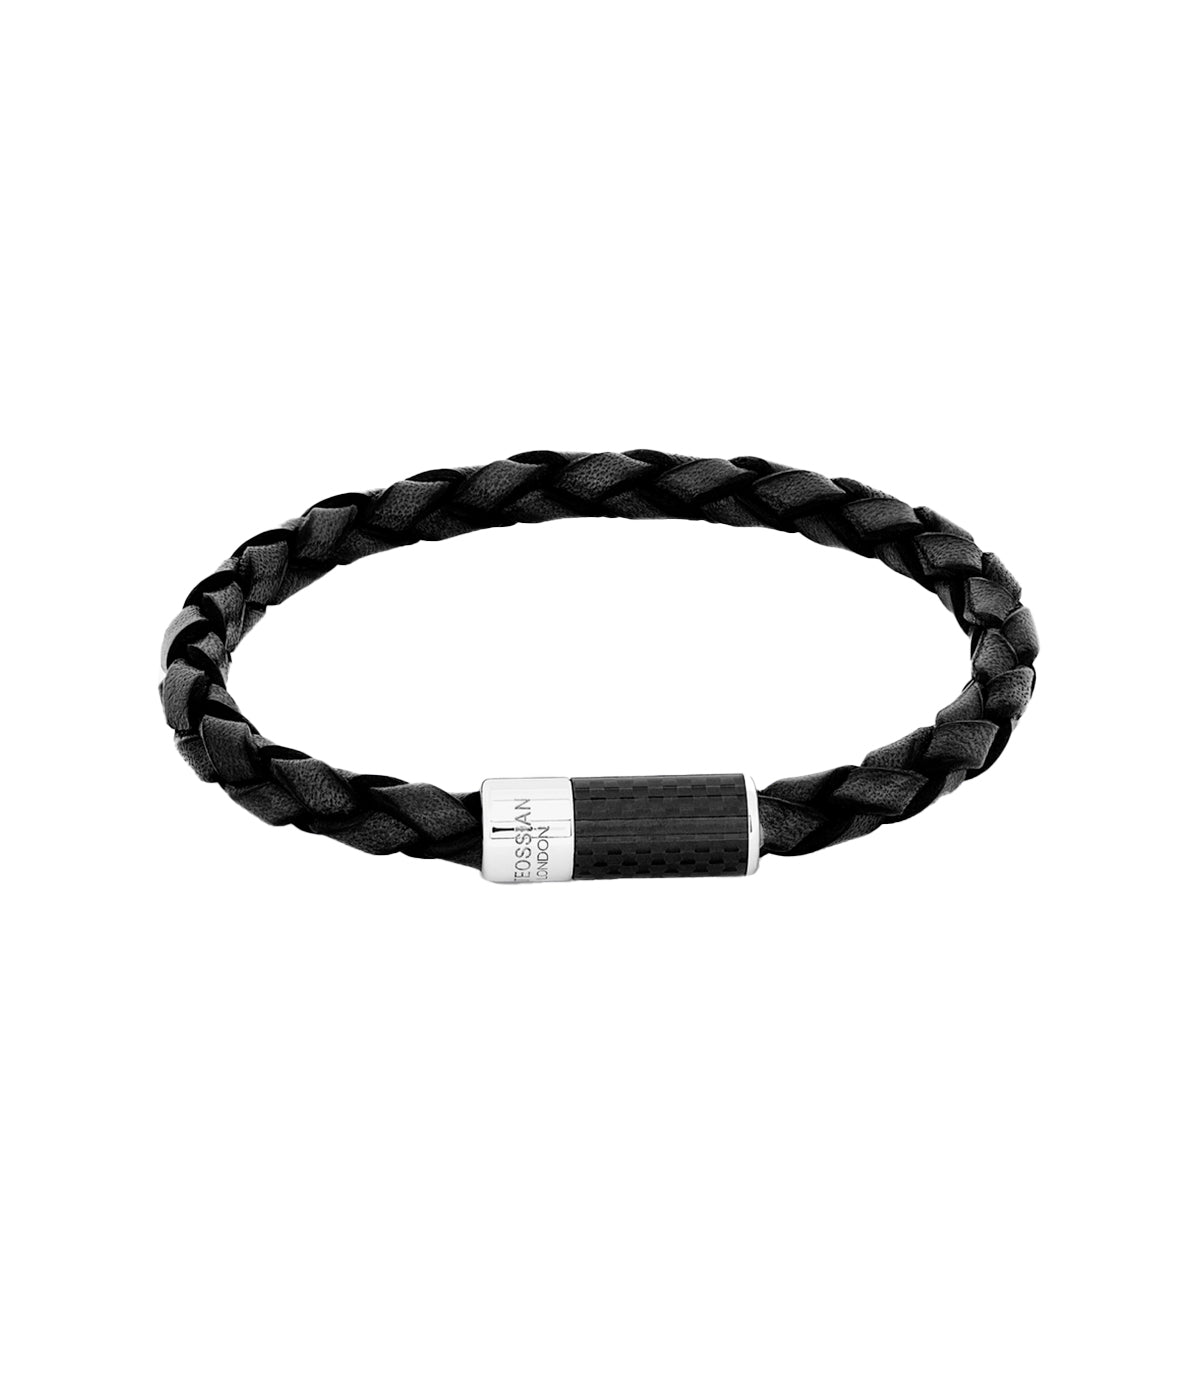 Carbon Pop Bracelet in Black